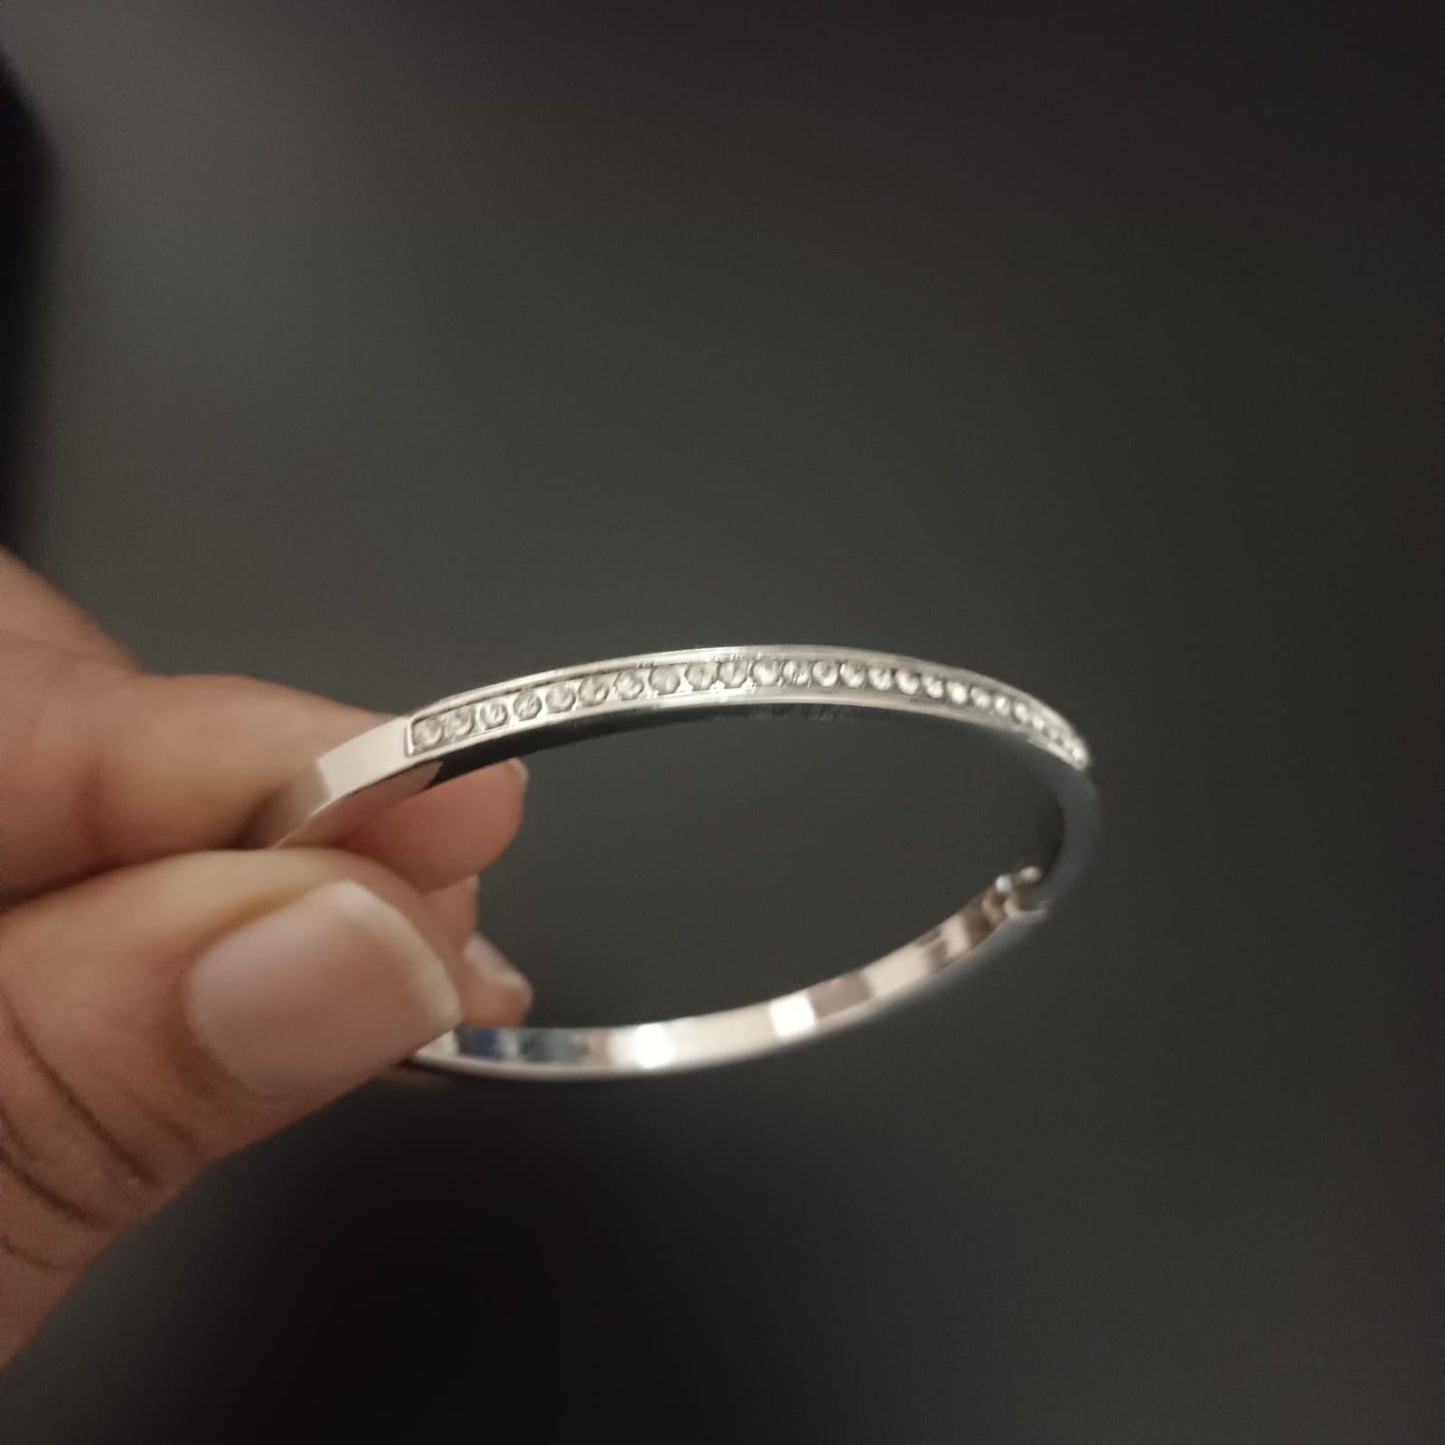 New Diamond Silver Bangle Design Kada Bracelet For Women and Girl-Jack Marc